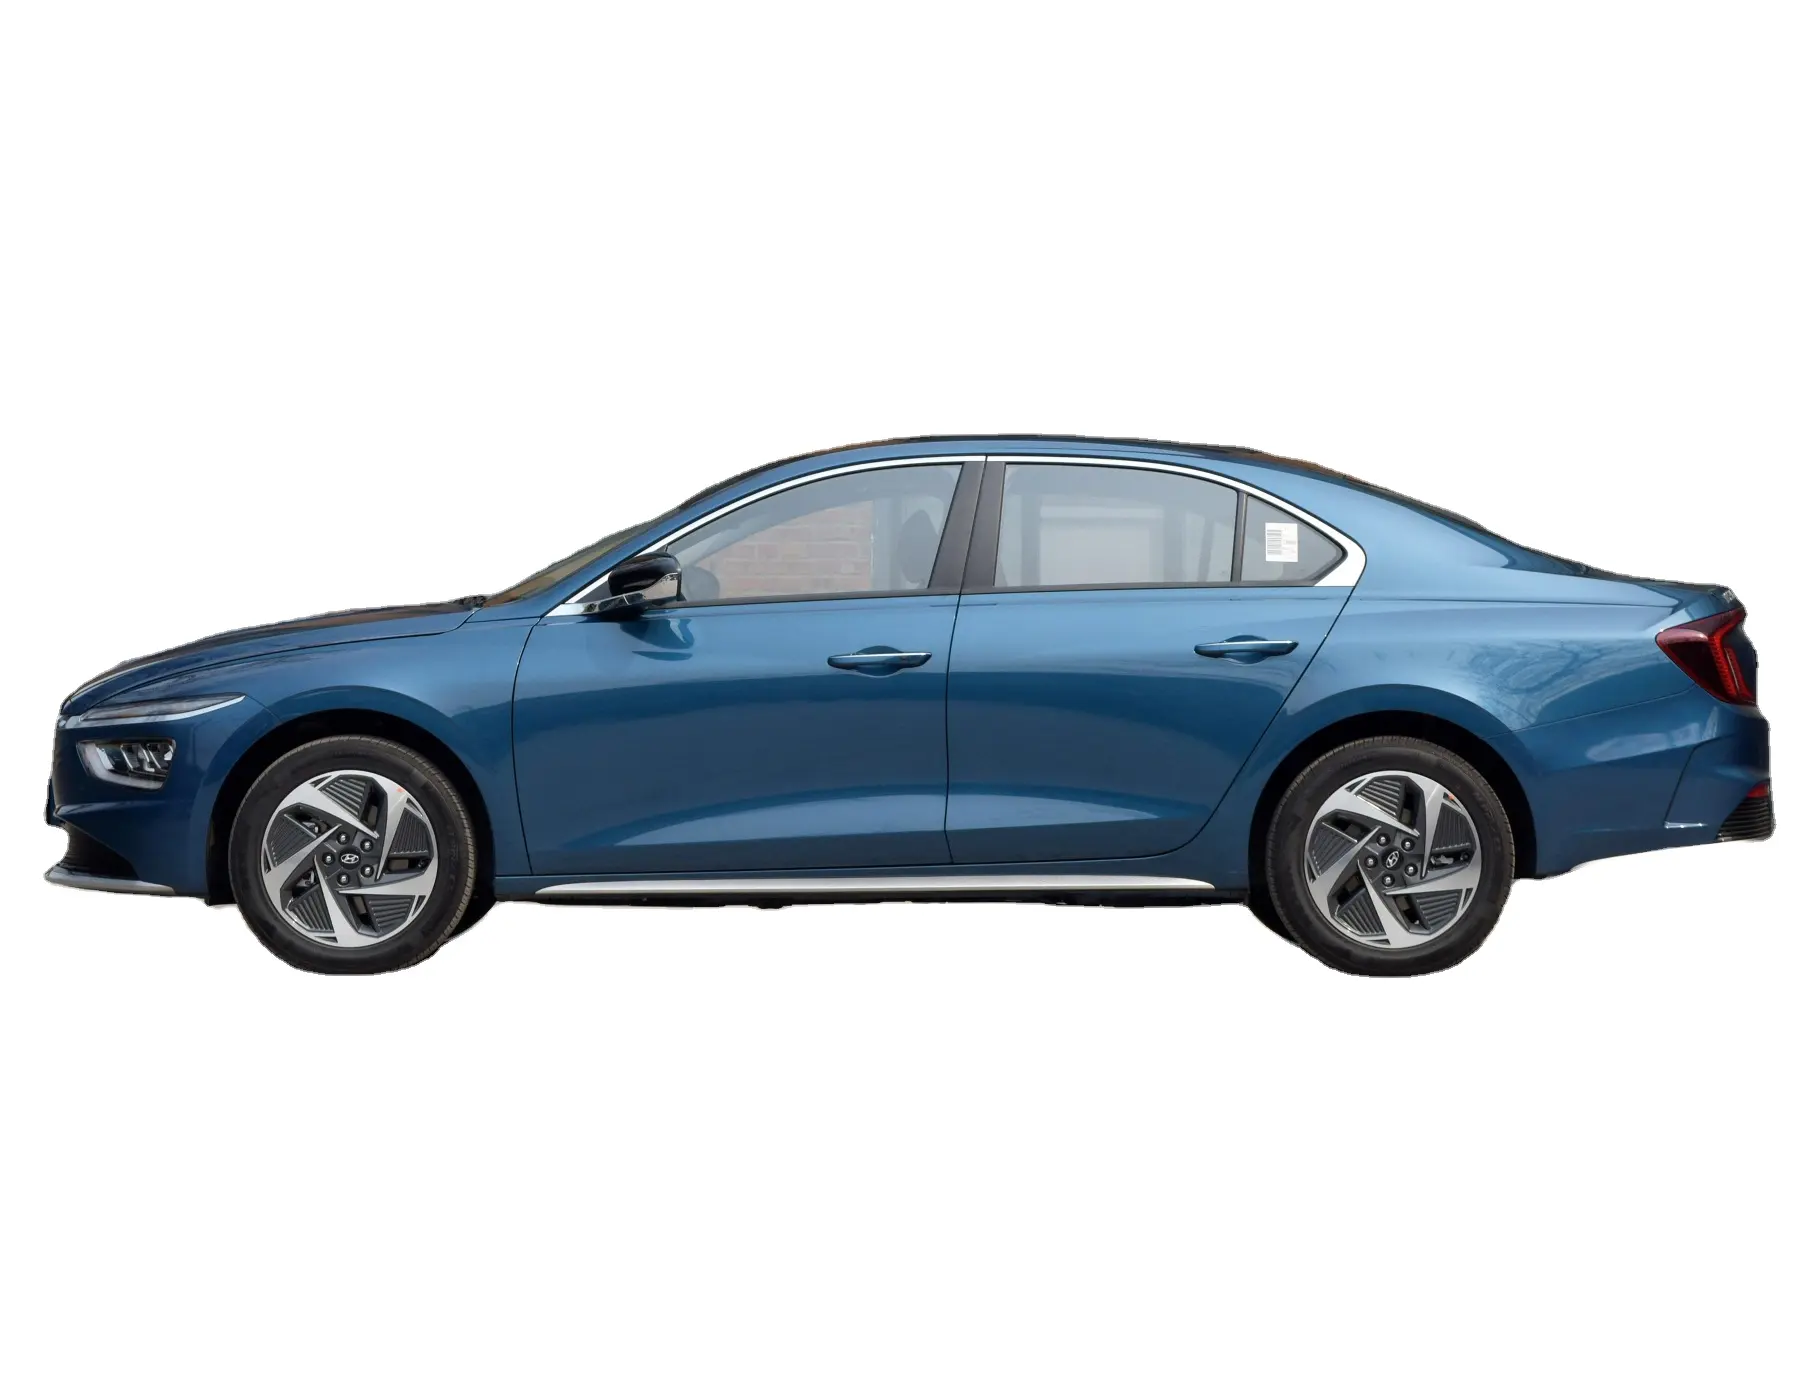 China Limousine Hyundai Mistra Reine elektrische 520km 2021 TOP Die Flaggschiff-Version Gute Qualität und günstiger Bestseller